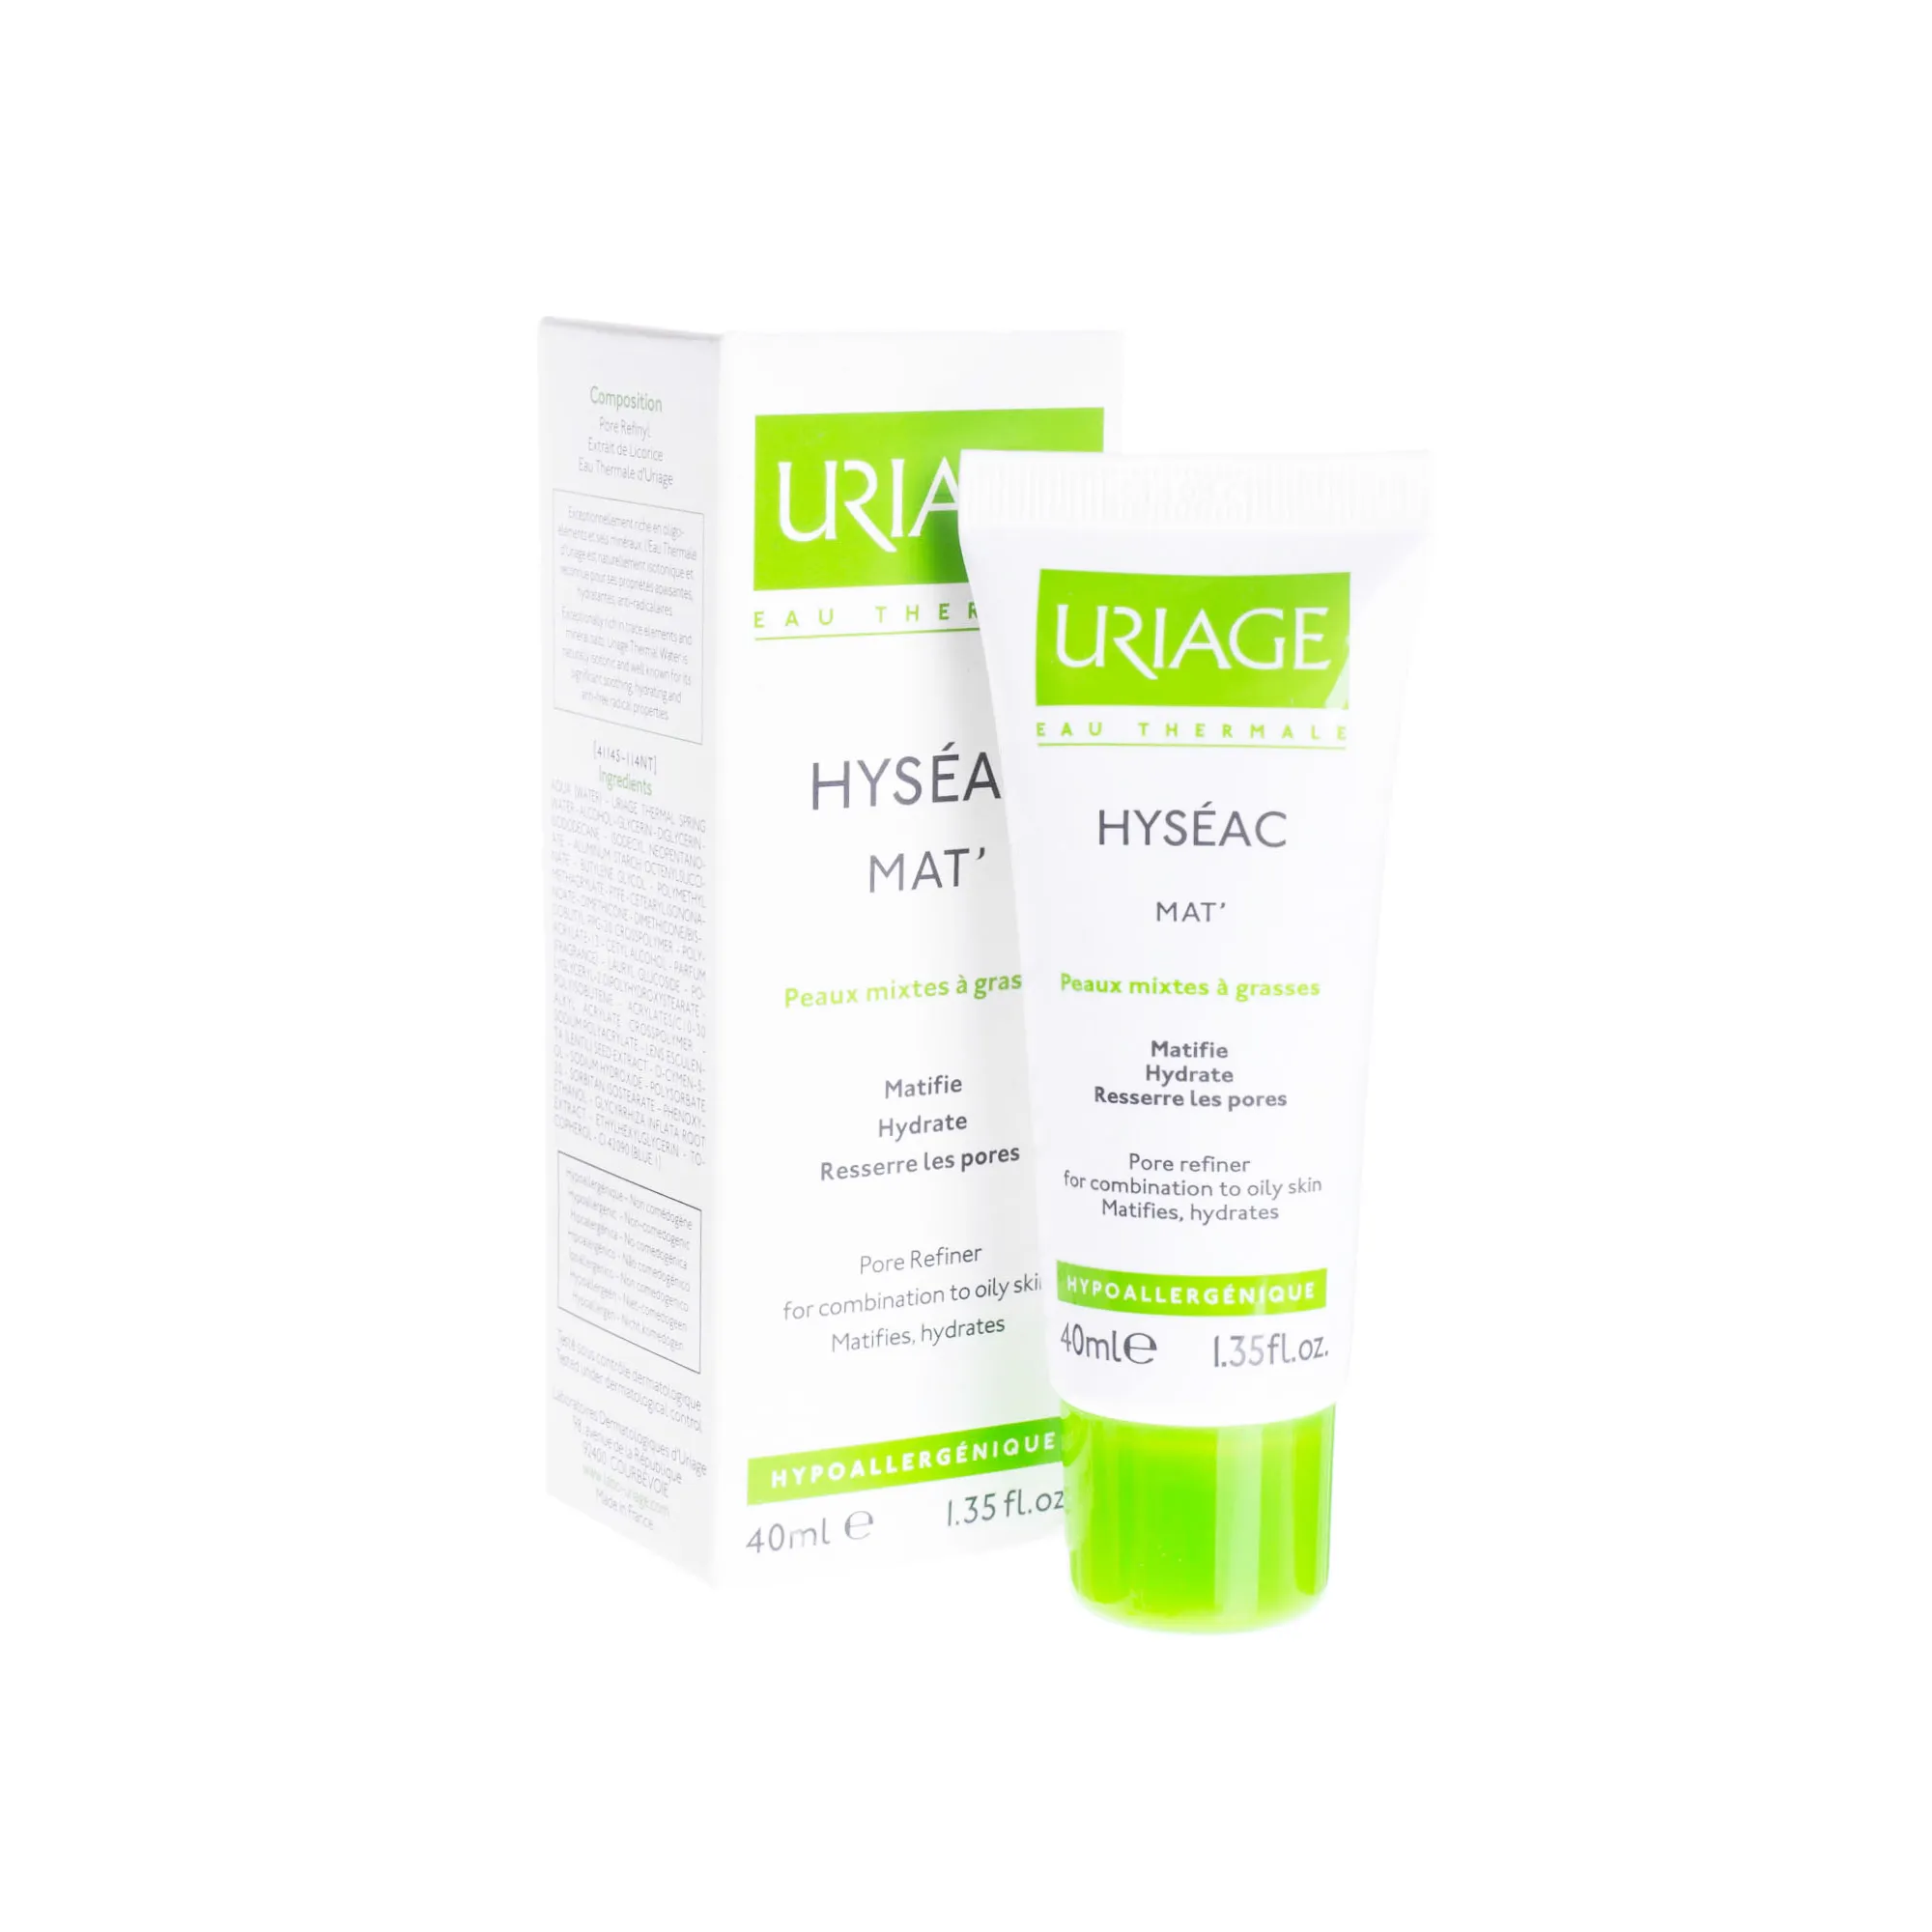 Uriage Hyseac MAT - krem przeznaczony do skóry mieszanej i tłustej, 40 ml 